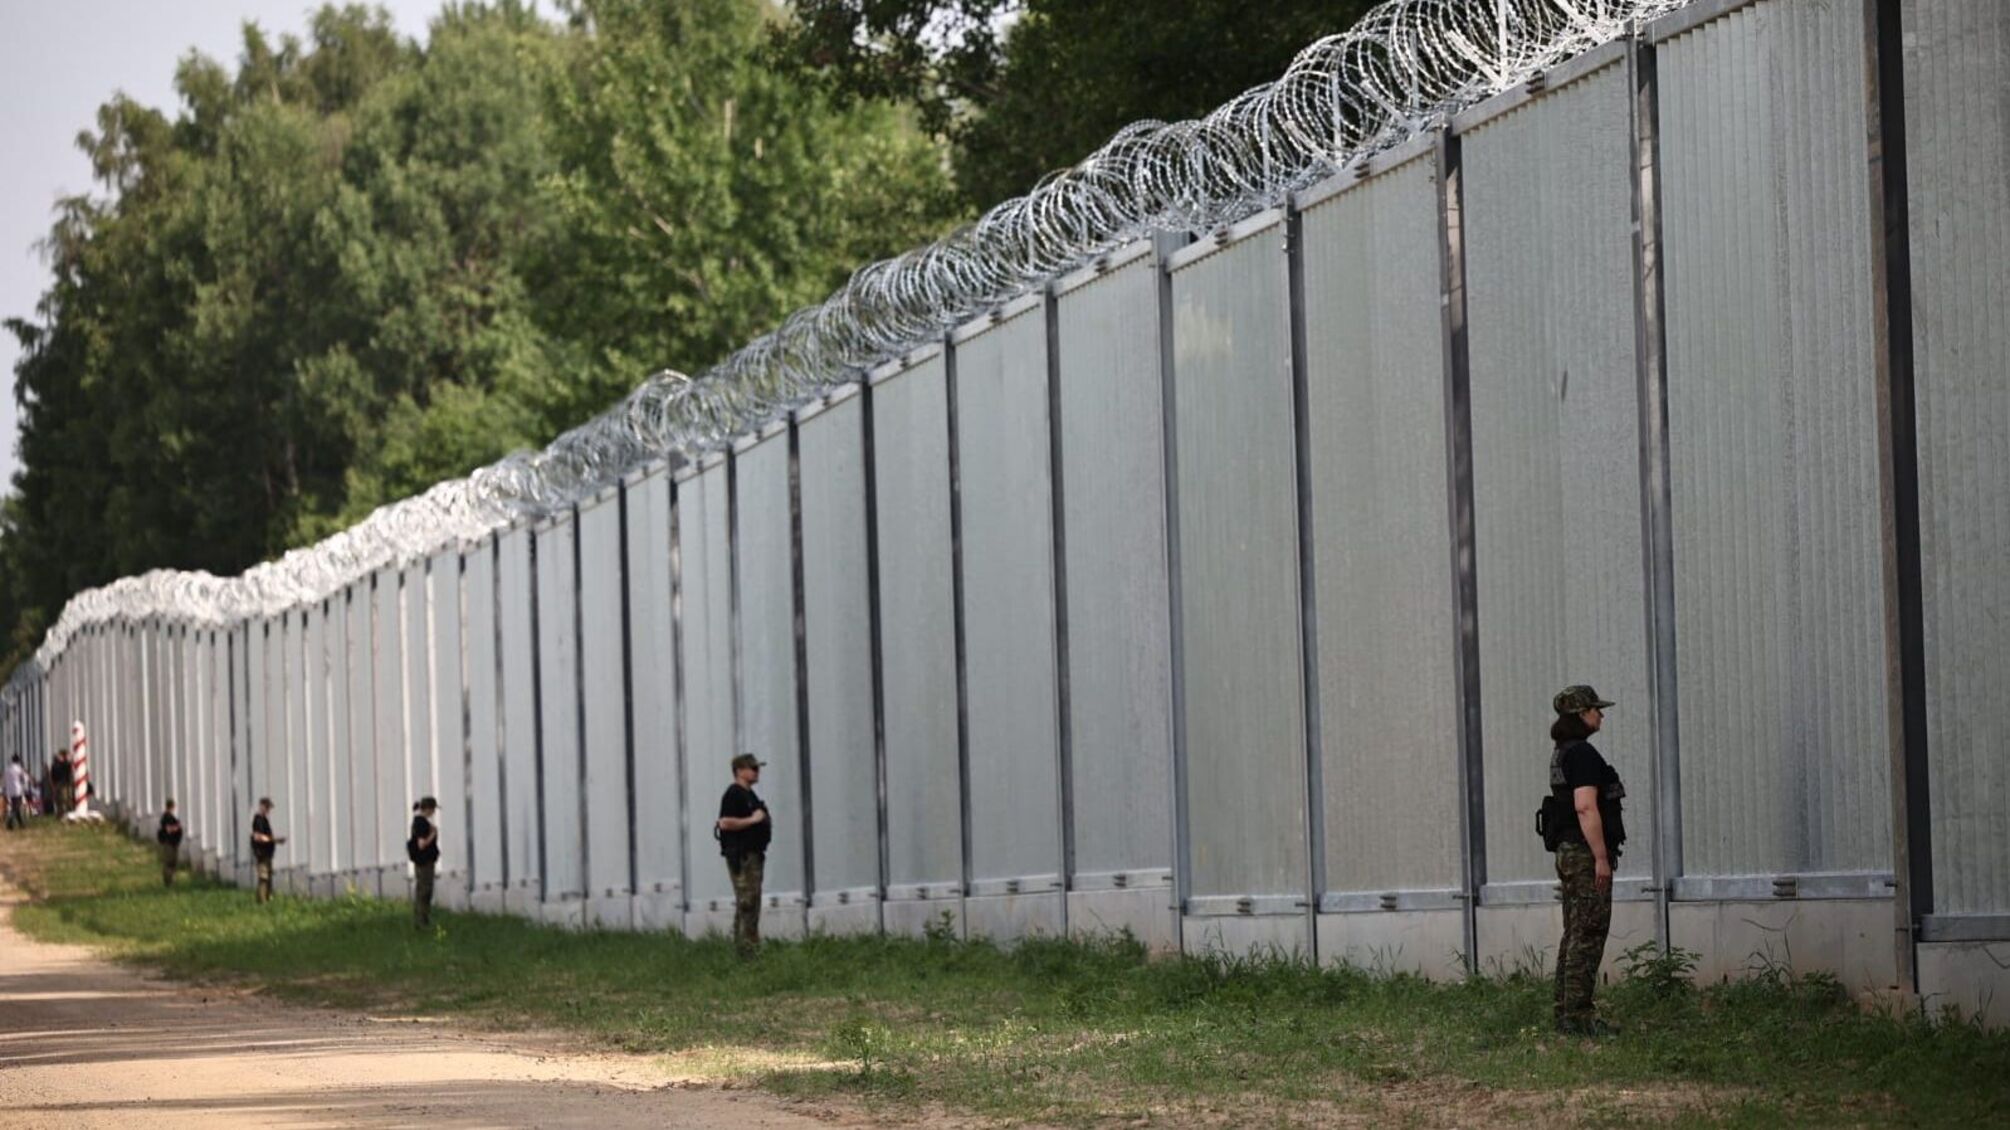 Польша достроила 5-метровую стену на границе с беларусью (видео)